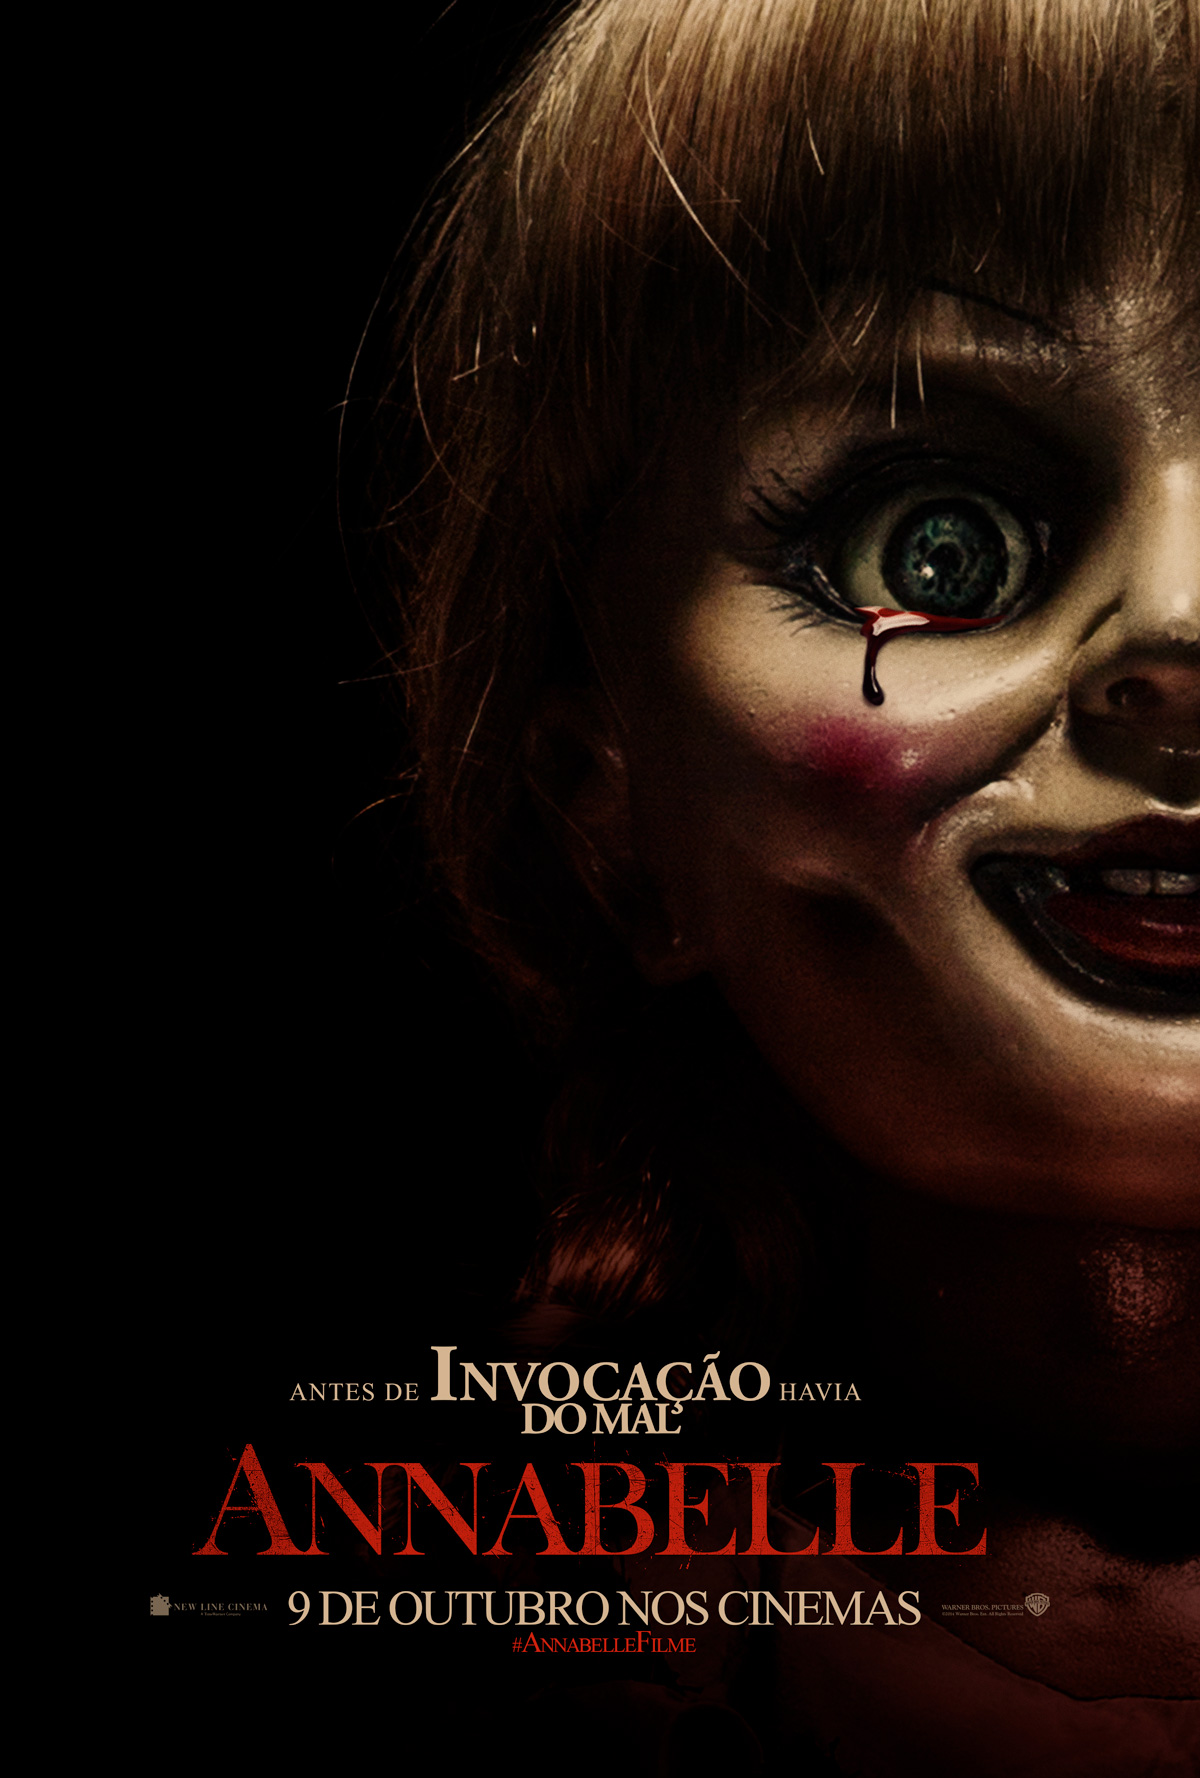 Annabelle-Official Poster Banner NACIONAL-12AGOSTO2014